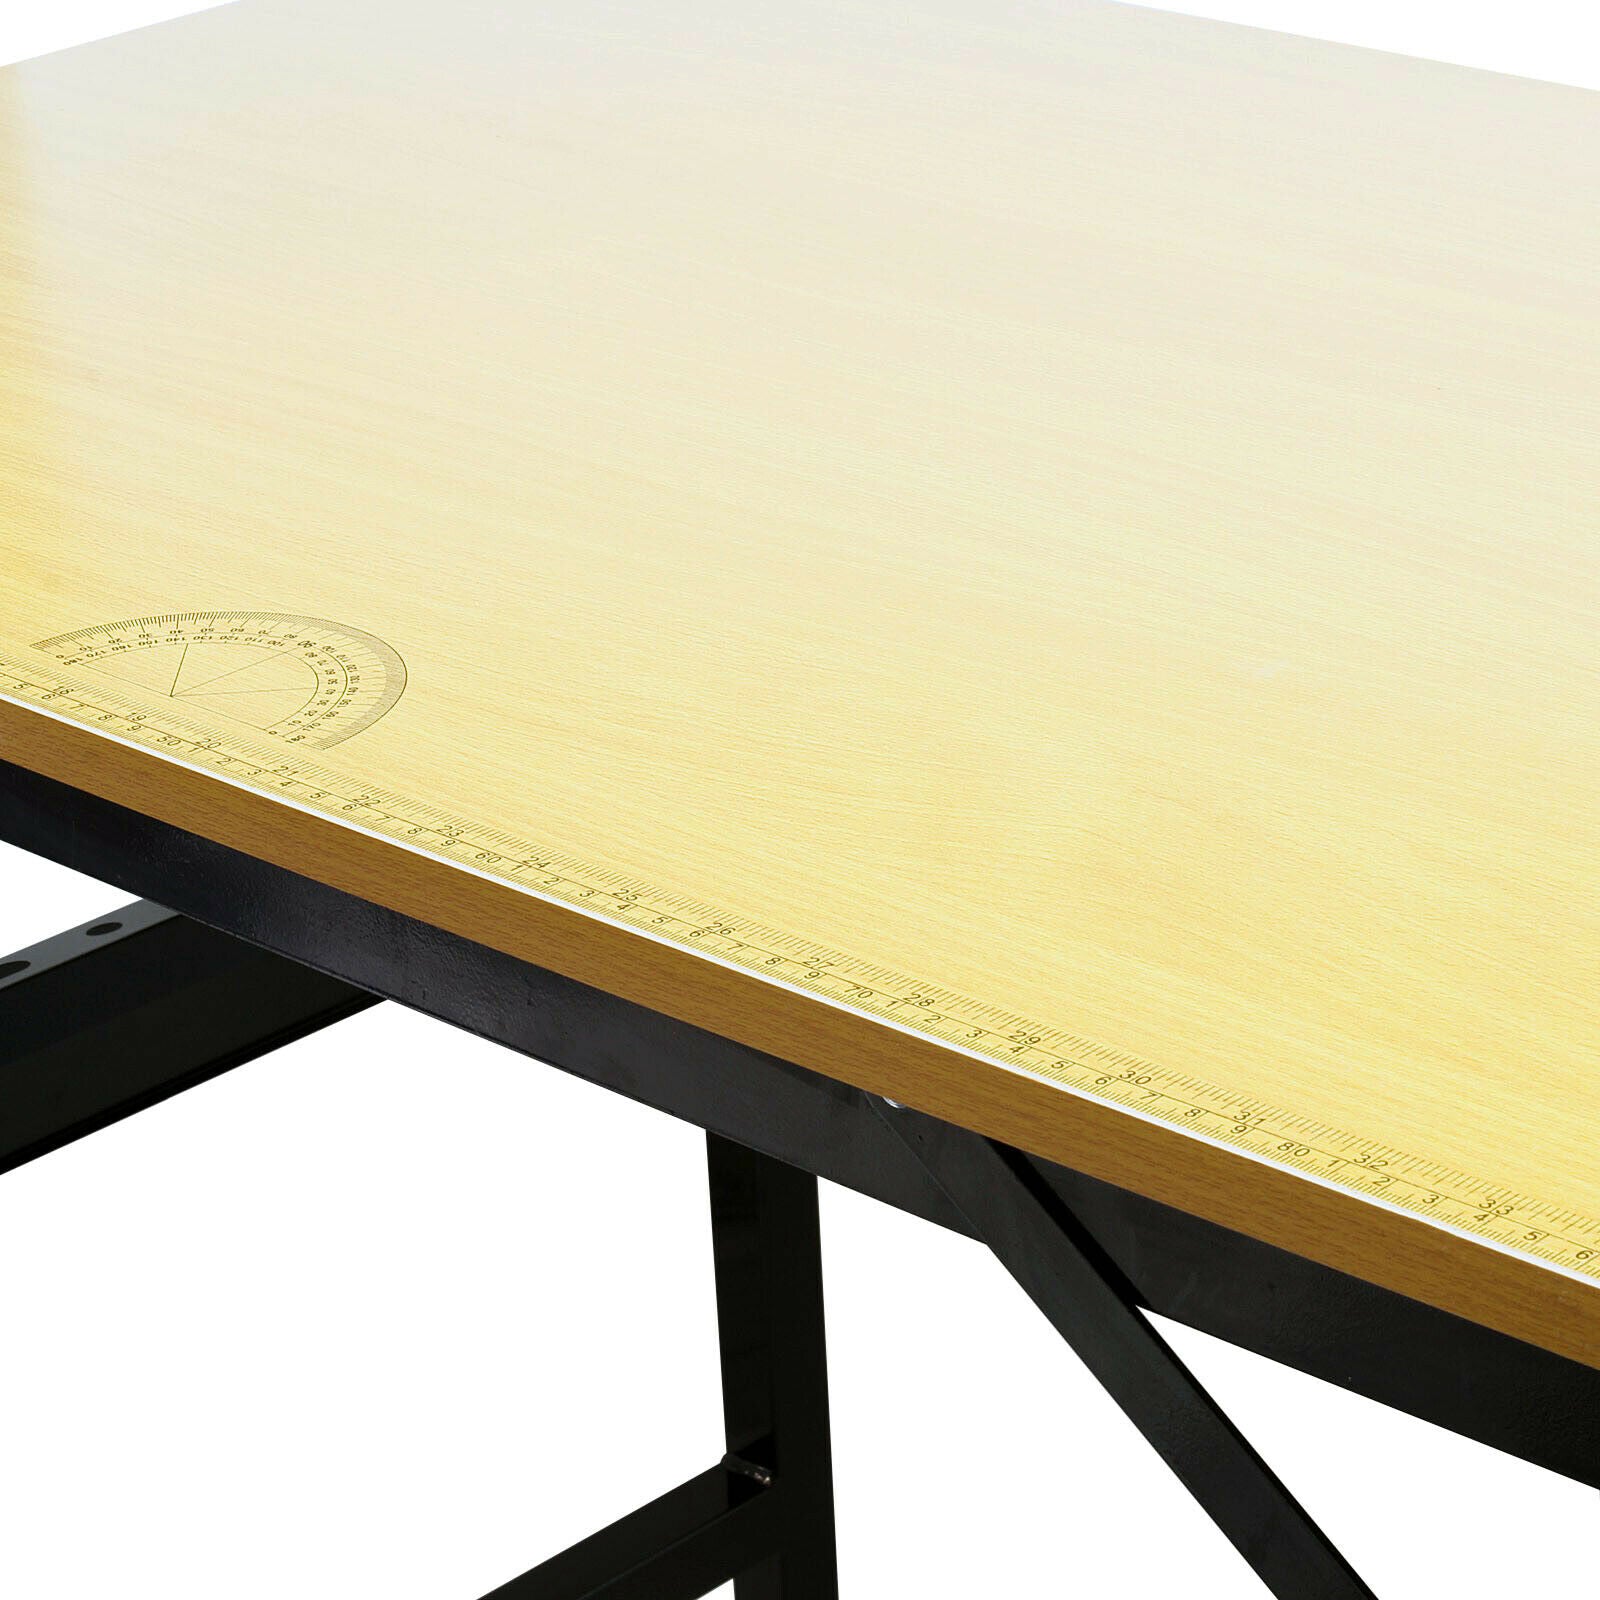 Établi pliable table atelier table de travail bricolage avec règle